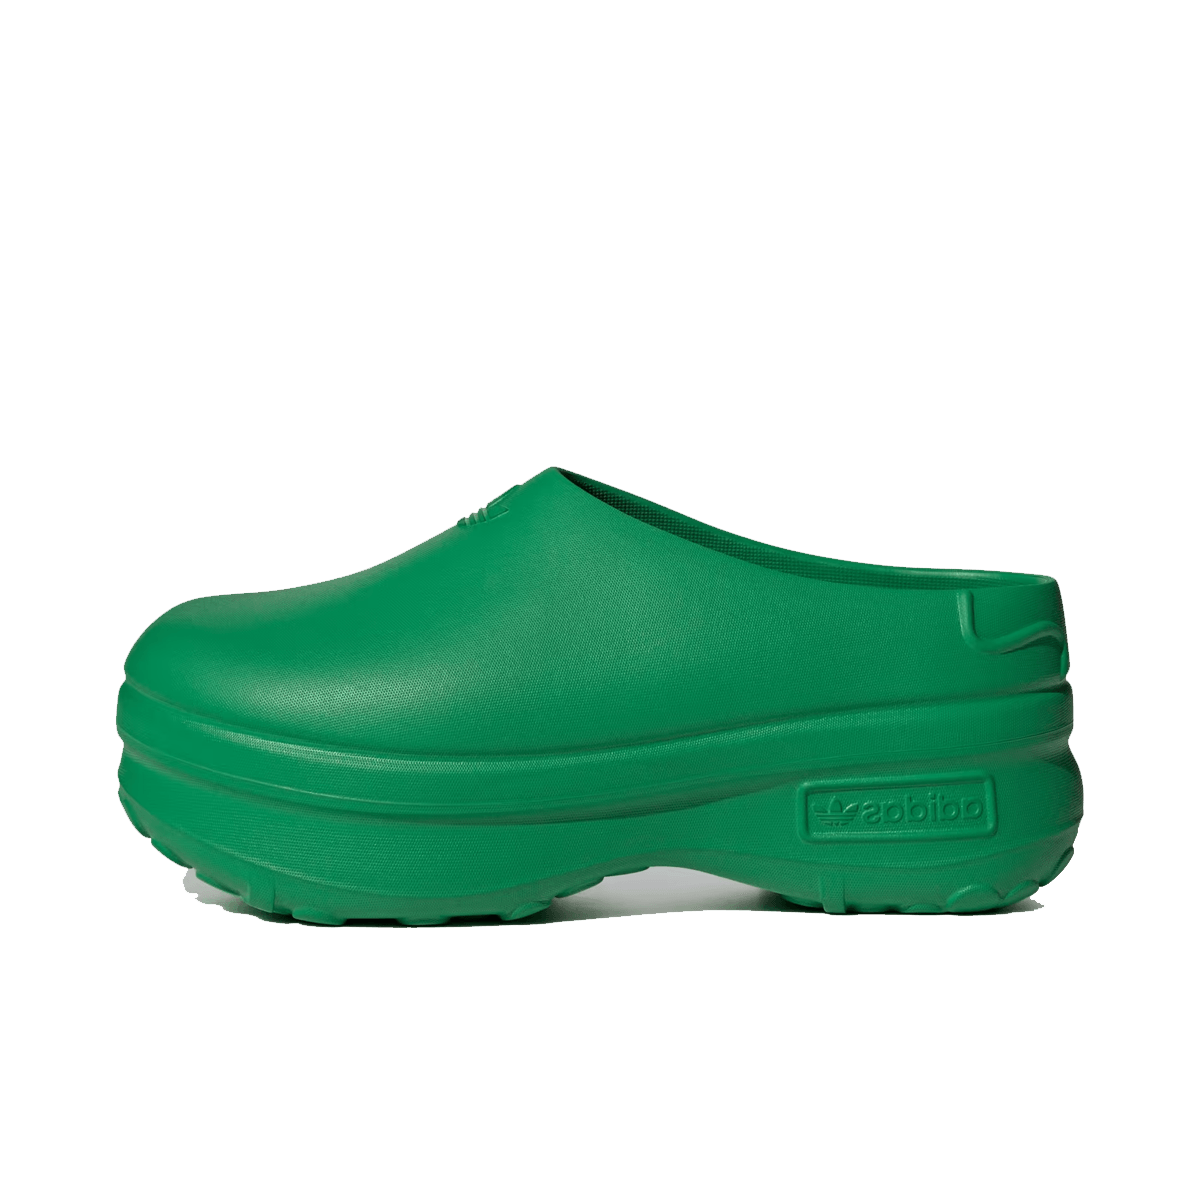 Stan Smith x adidas Adifom Mule WMNS 'Green' IG3181